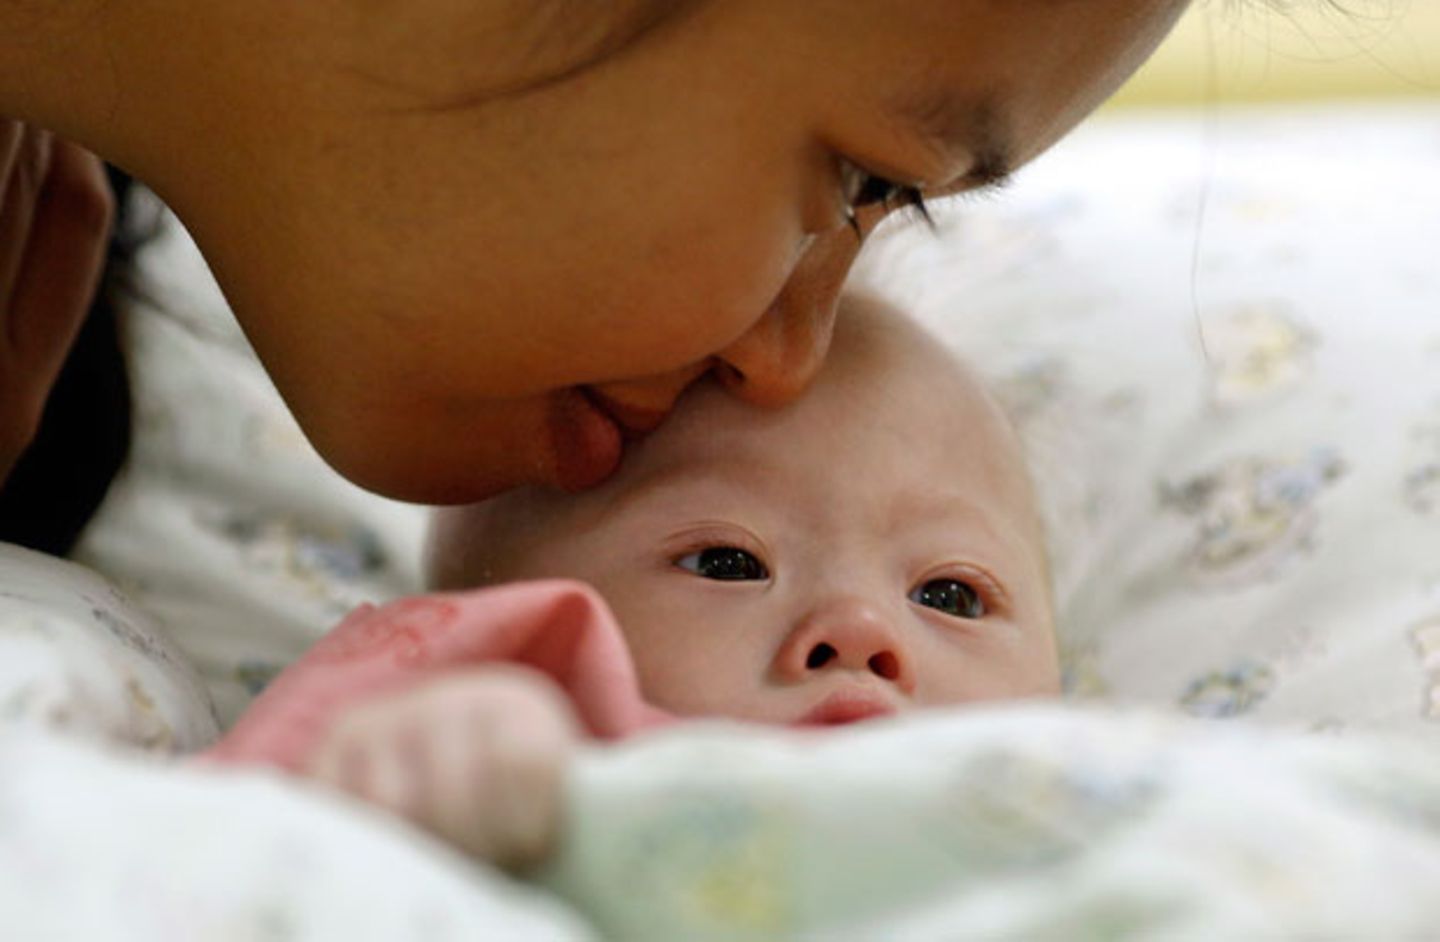 Behindertes Leihmutter-Baby: Vater soll wegen Kindesmissbrauchs vorbestraft sein